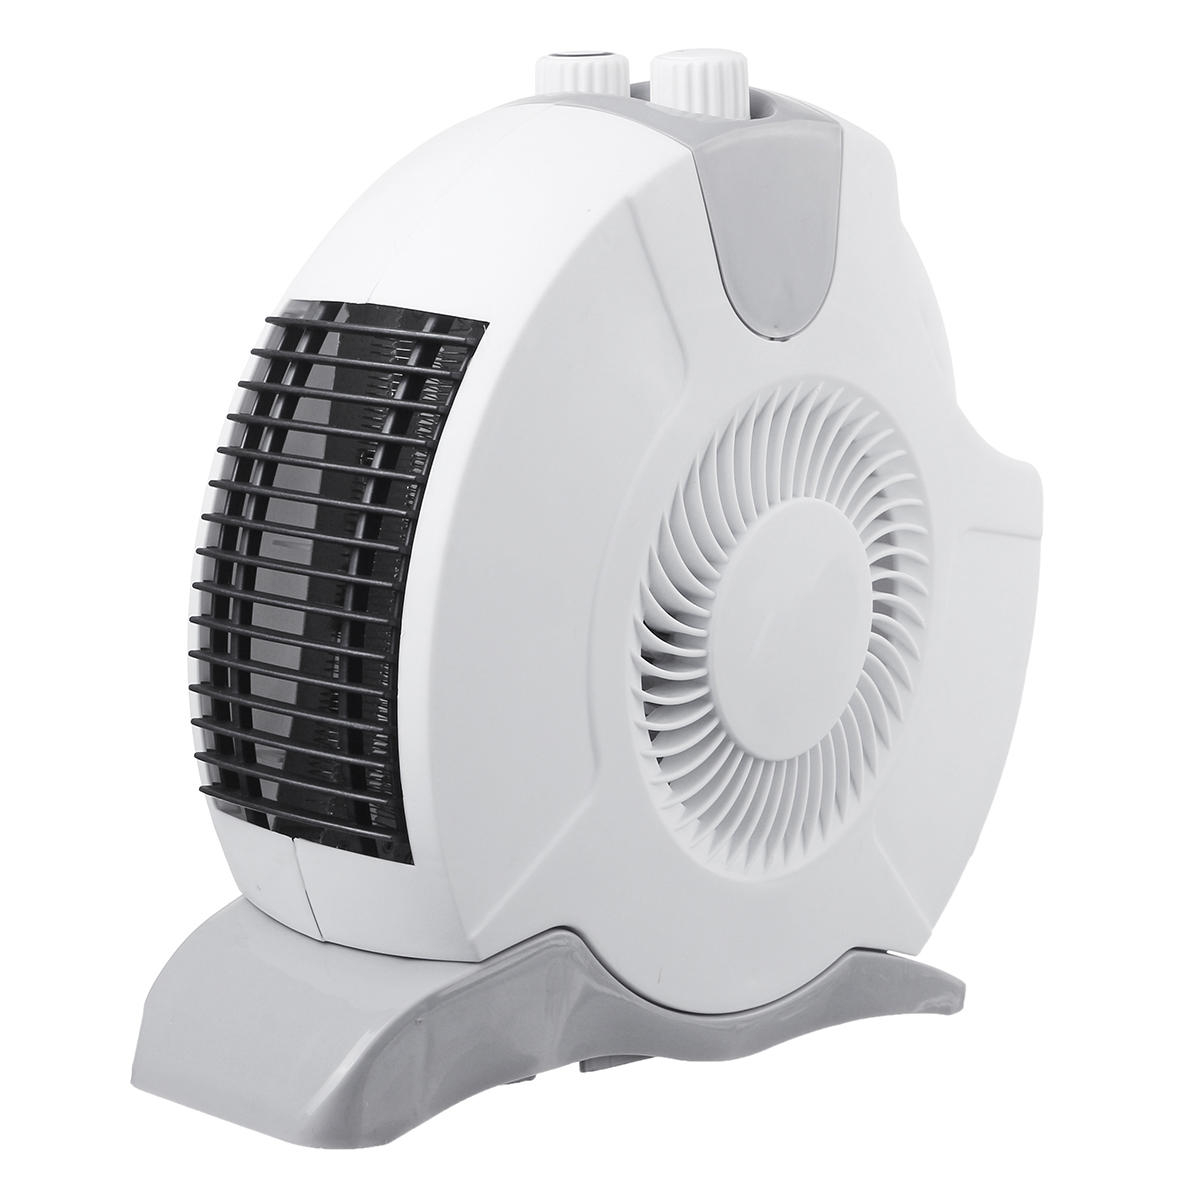 220v 1600w Desktop Heater Fan Space Heater Portable Winter Warm Home Office Desk Heating Fan with dimensions 1200 X 1200